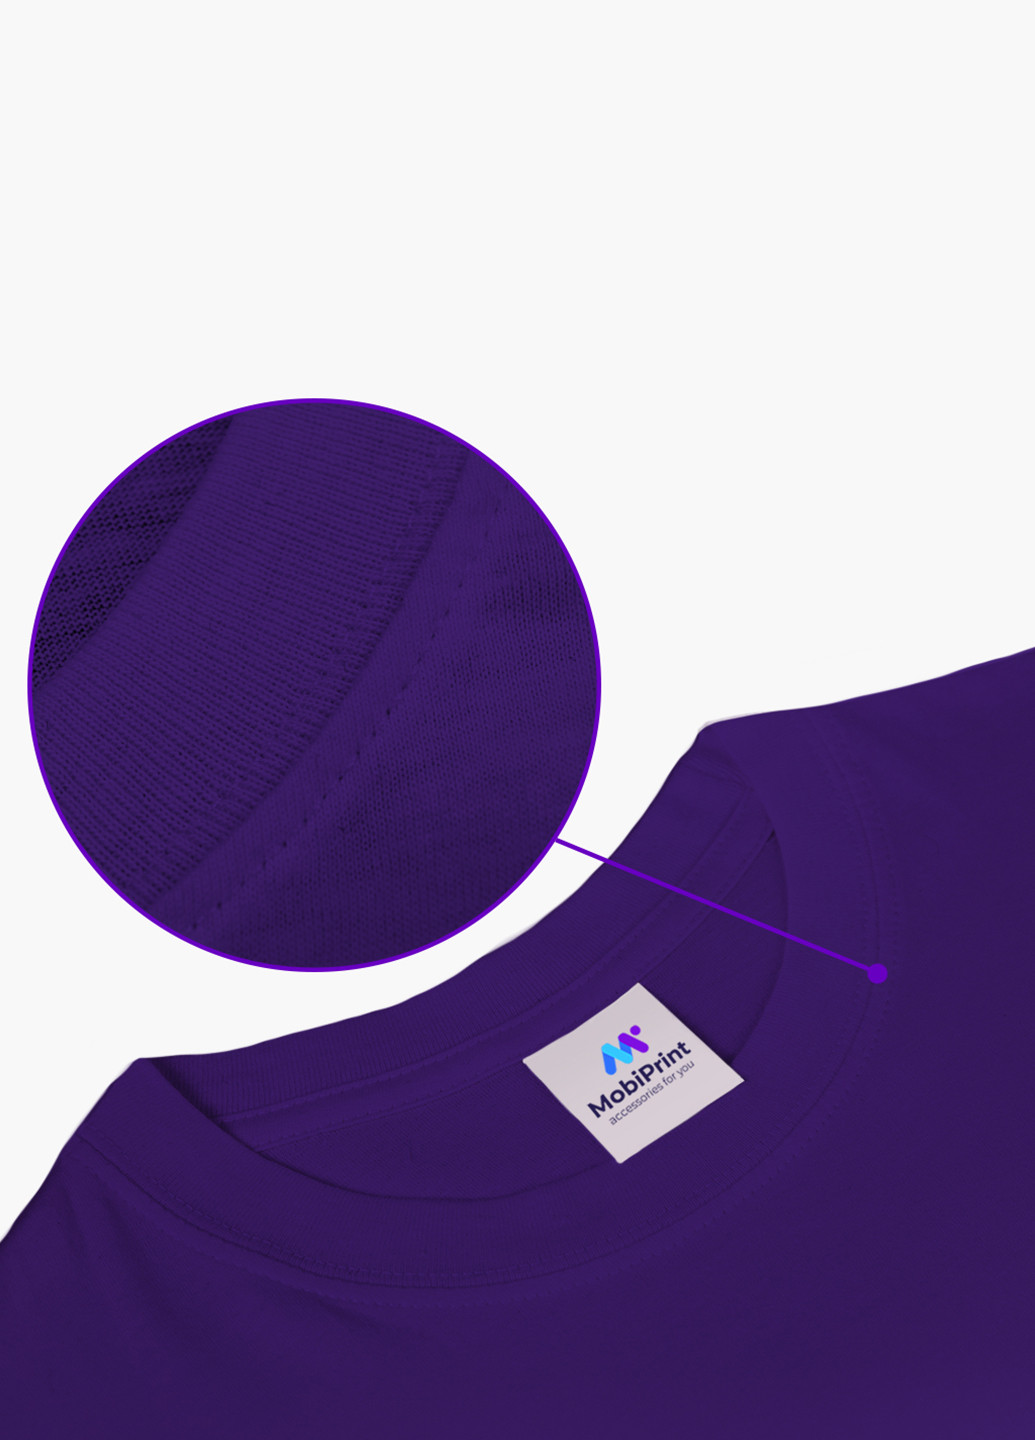 Фиолетовая демисезонная футболка детская лайк (likee)(9224-1041) MobiPrint